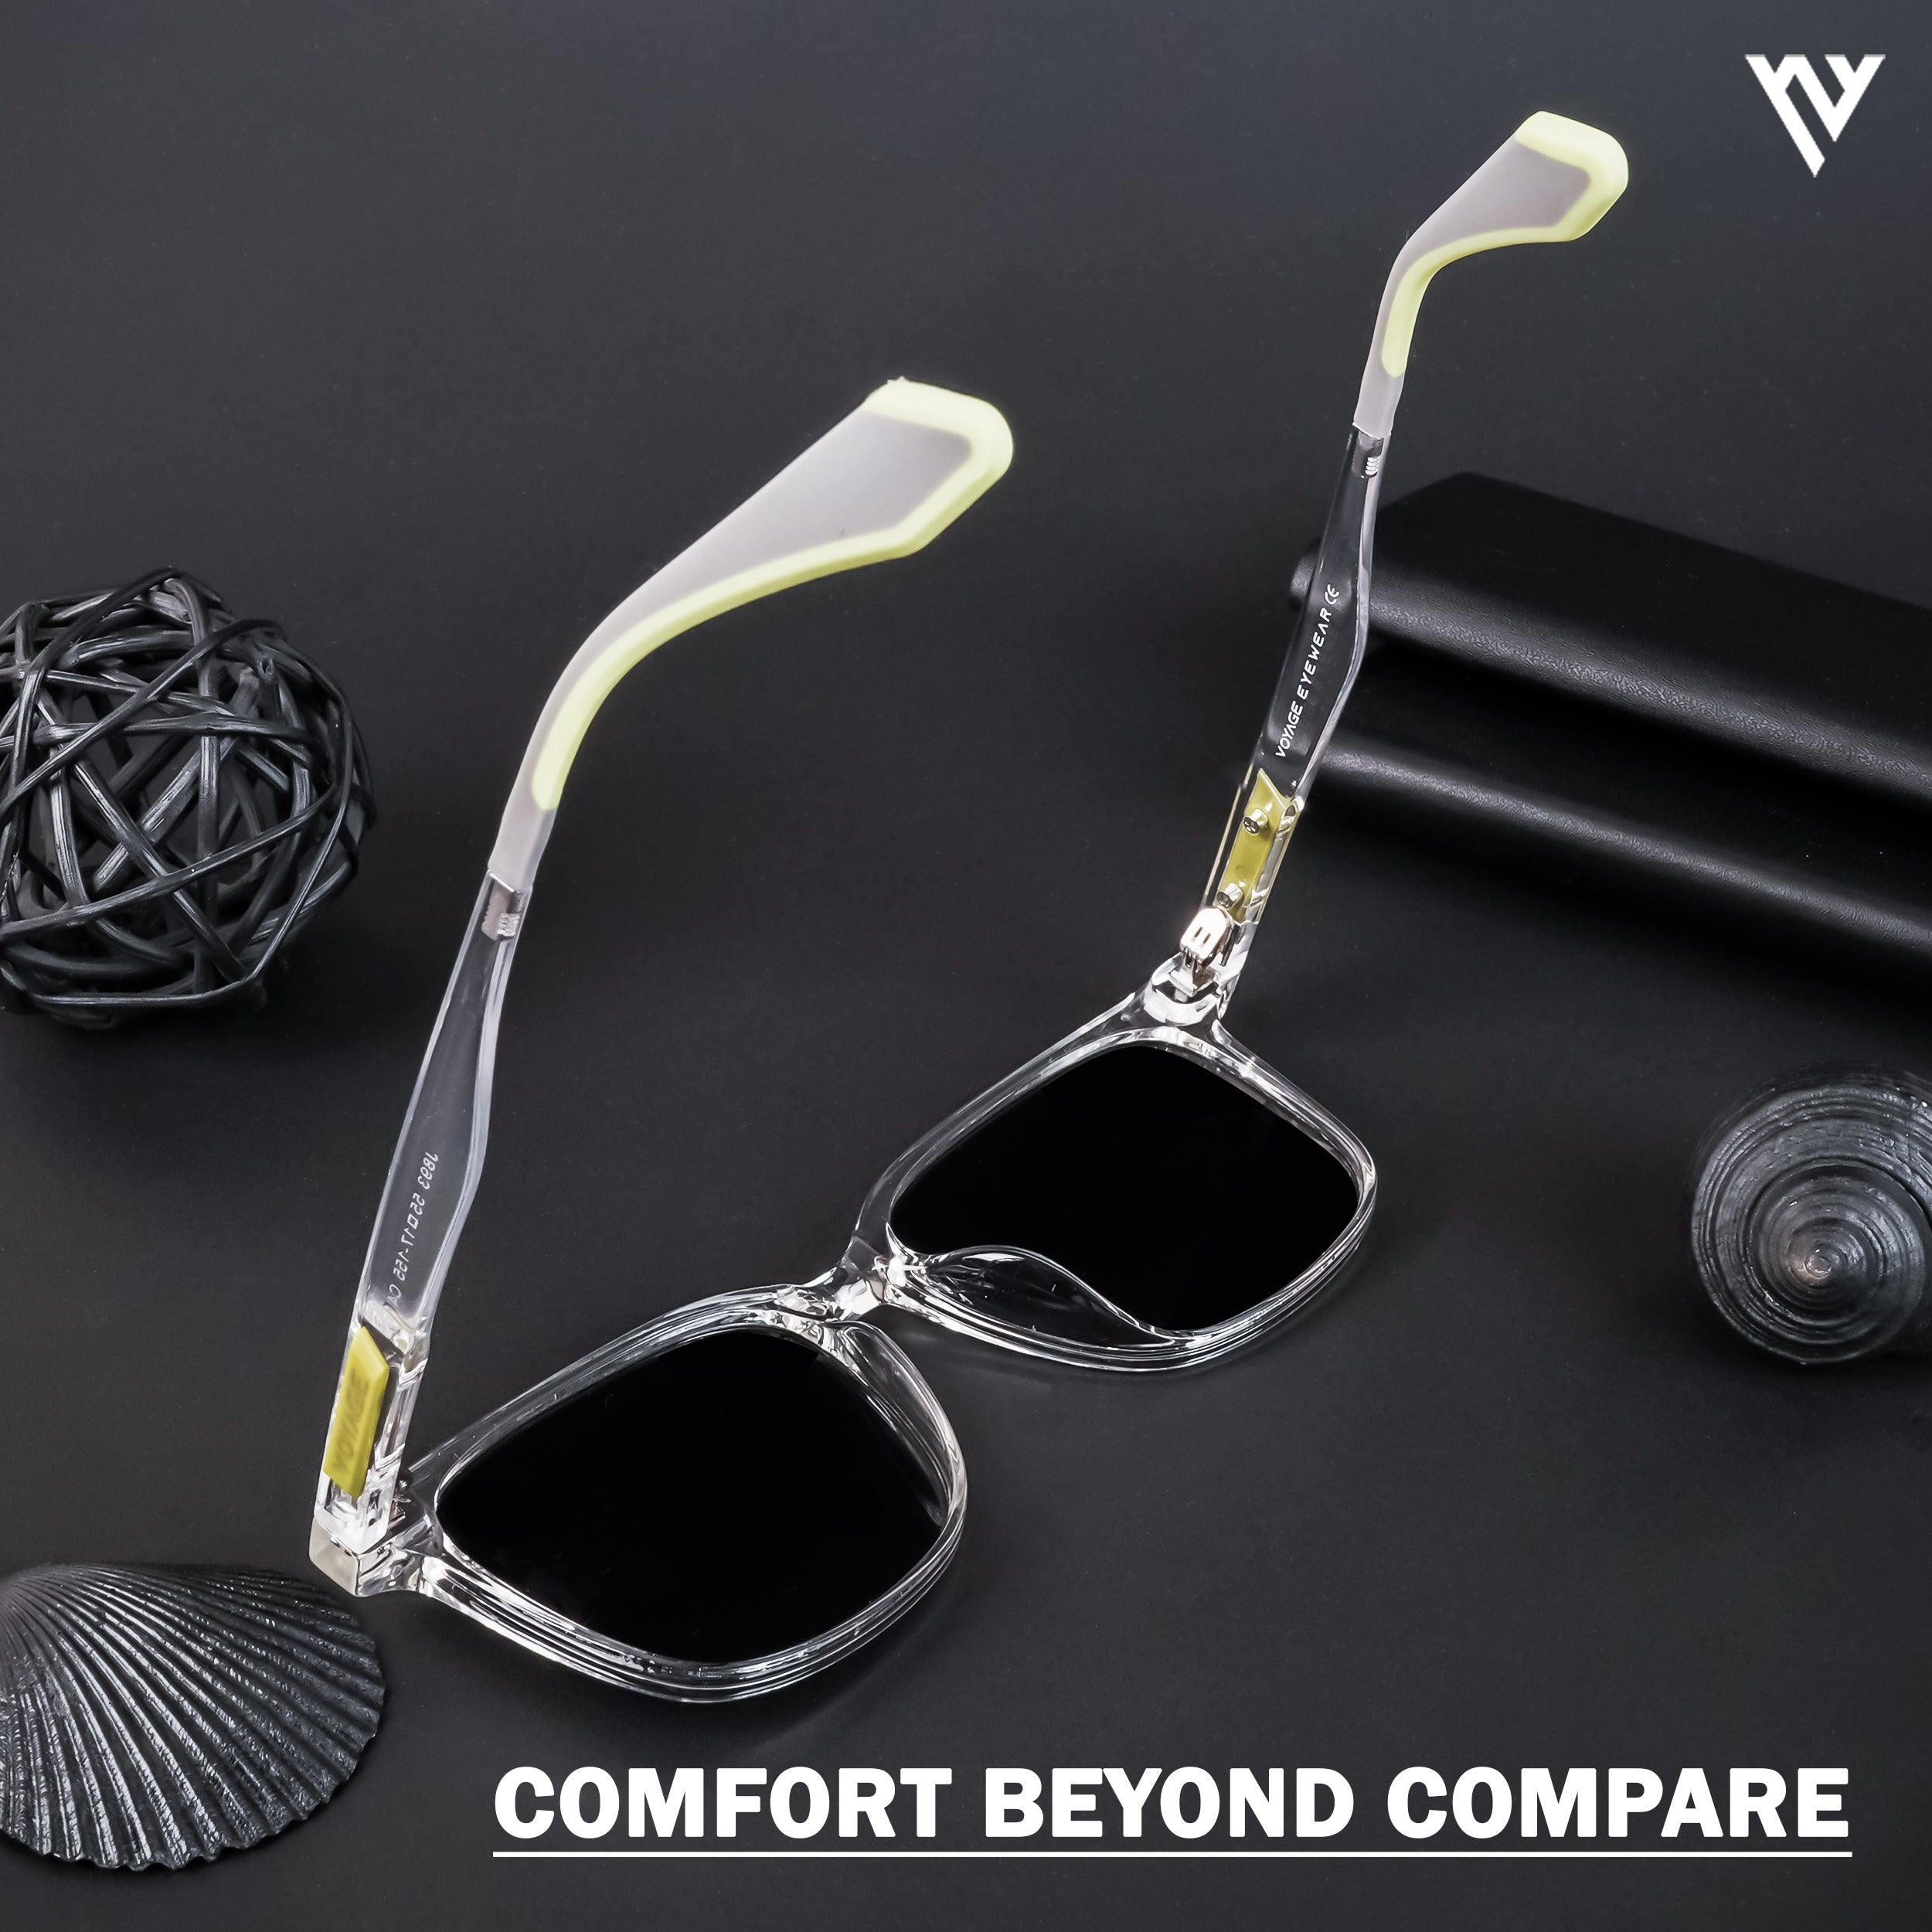 Voyage Active Transparent Polarized Wayfarer Sunglasses for Men & Women - PMG4463